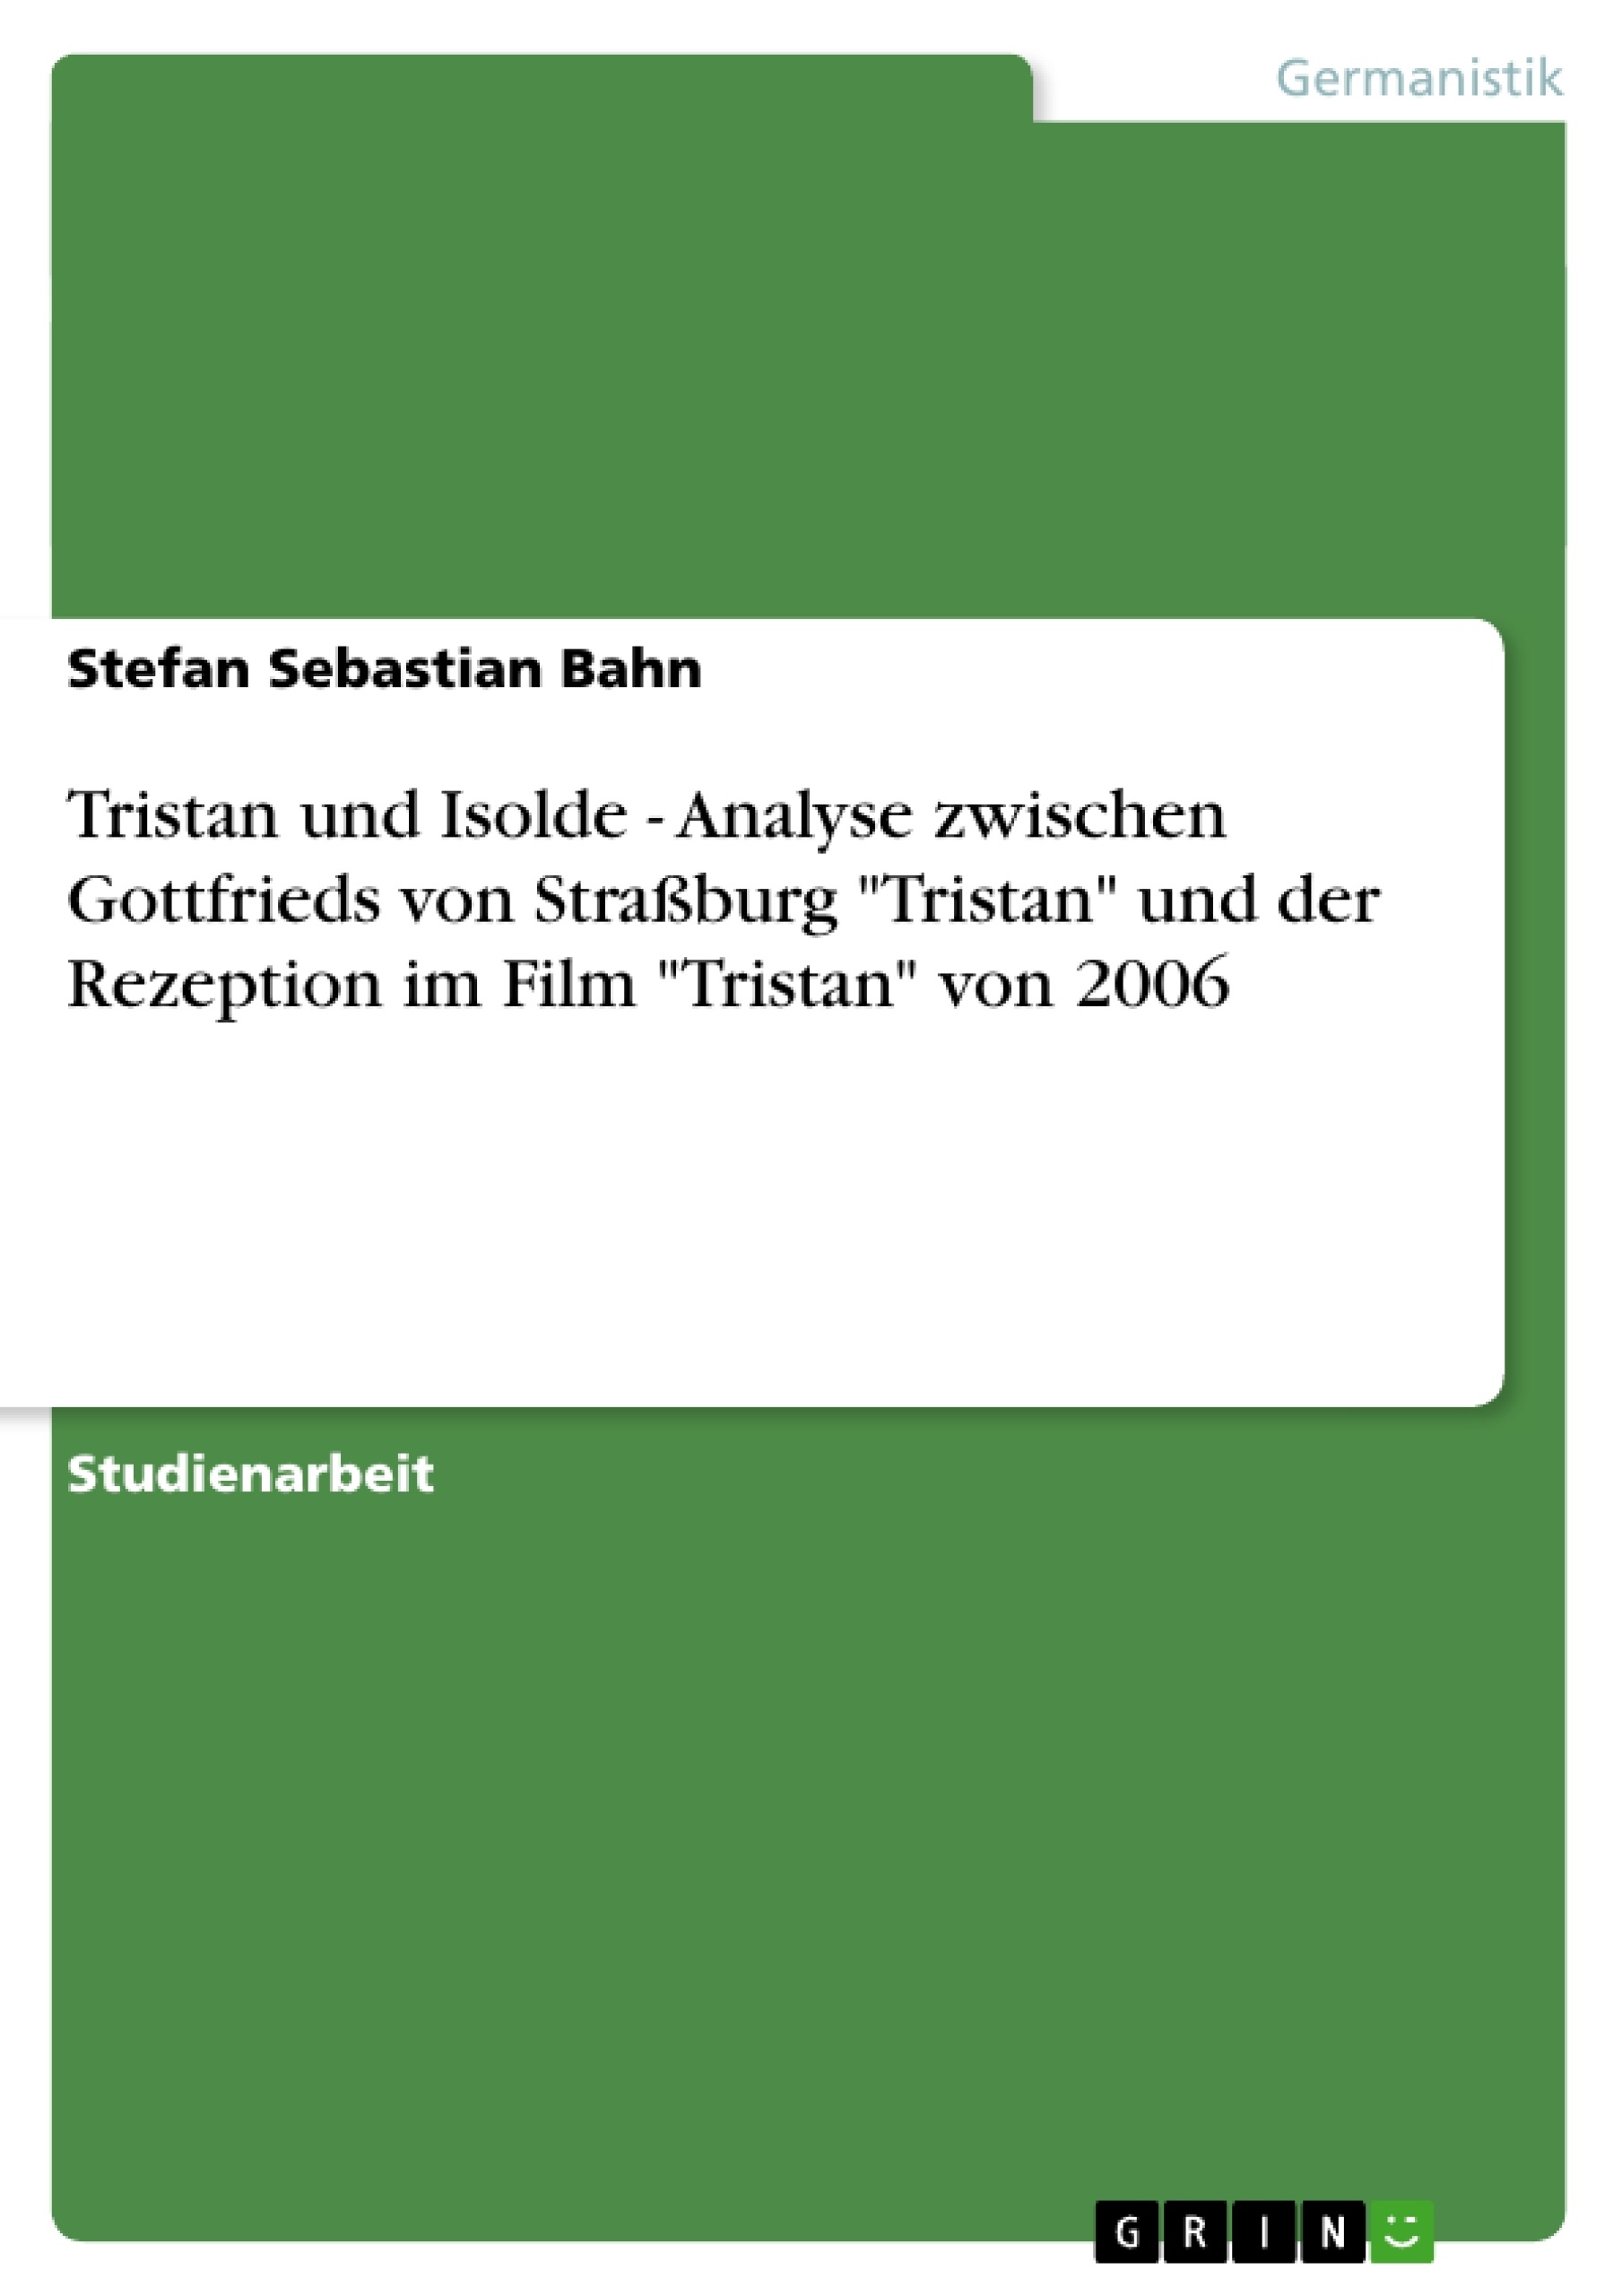 Title: Tristan und Isolde - Analyse zwischen Gottfrieds von Straßburg "Tristan" und der Rezeption im Film "Tristan" von 2006